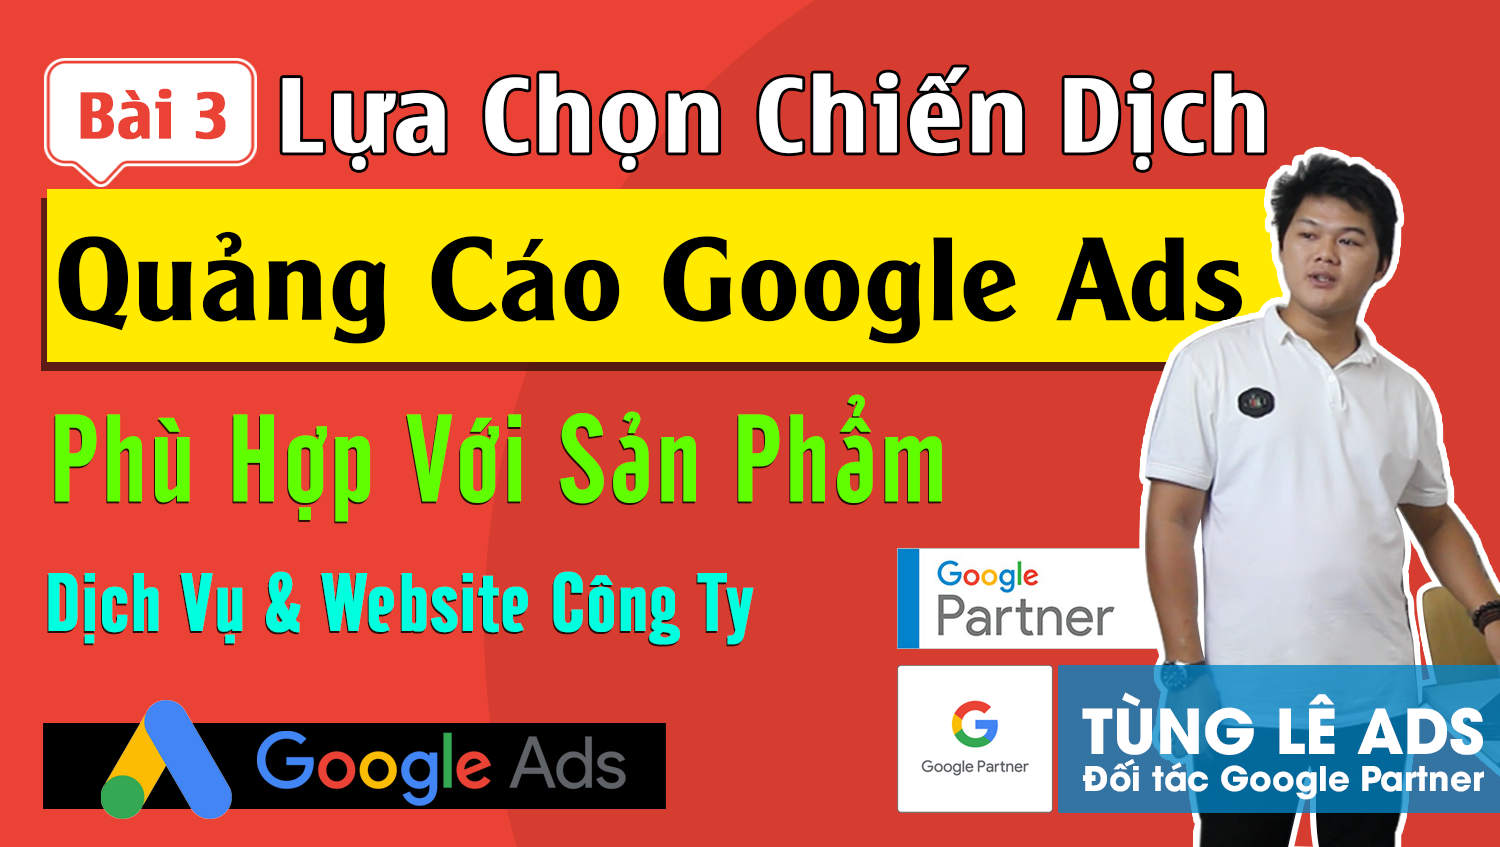 Cách lựa chọn chiến dịch quảng cáo Google Ads phù hợp cho từng loại sản phẩm dịch vụ #3